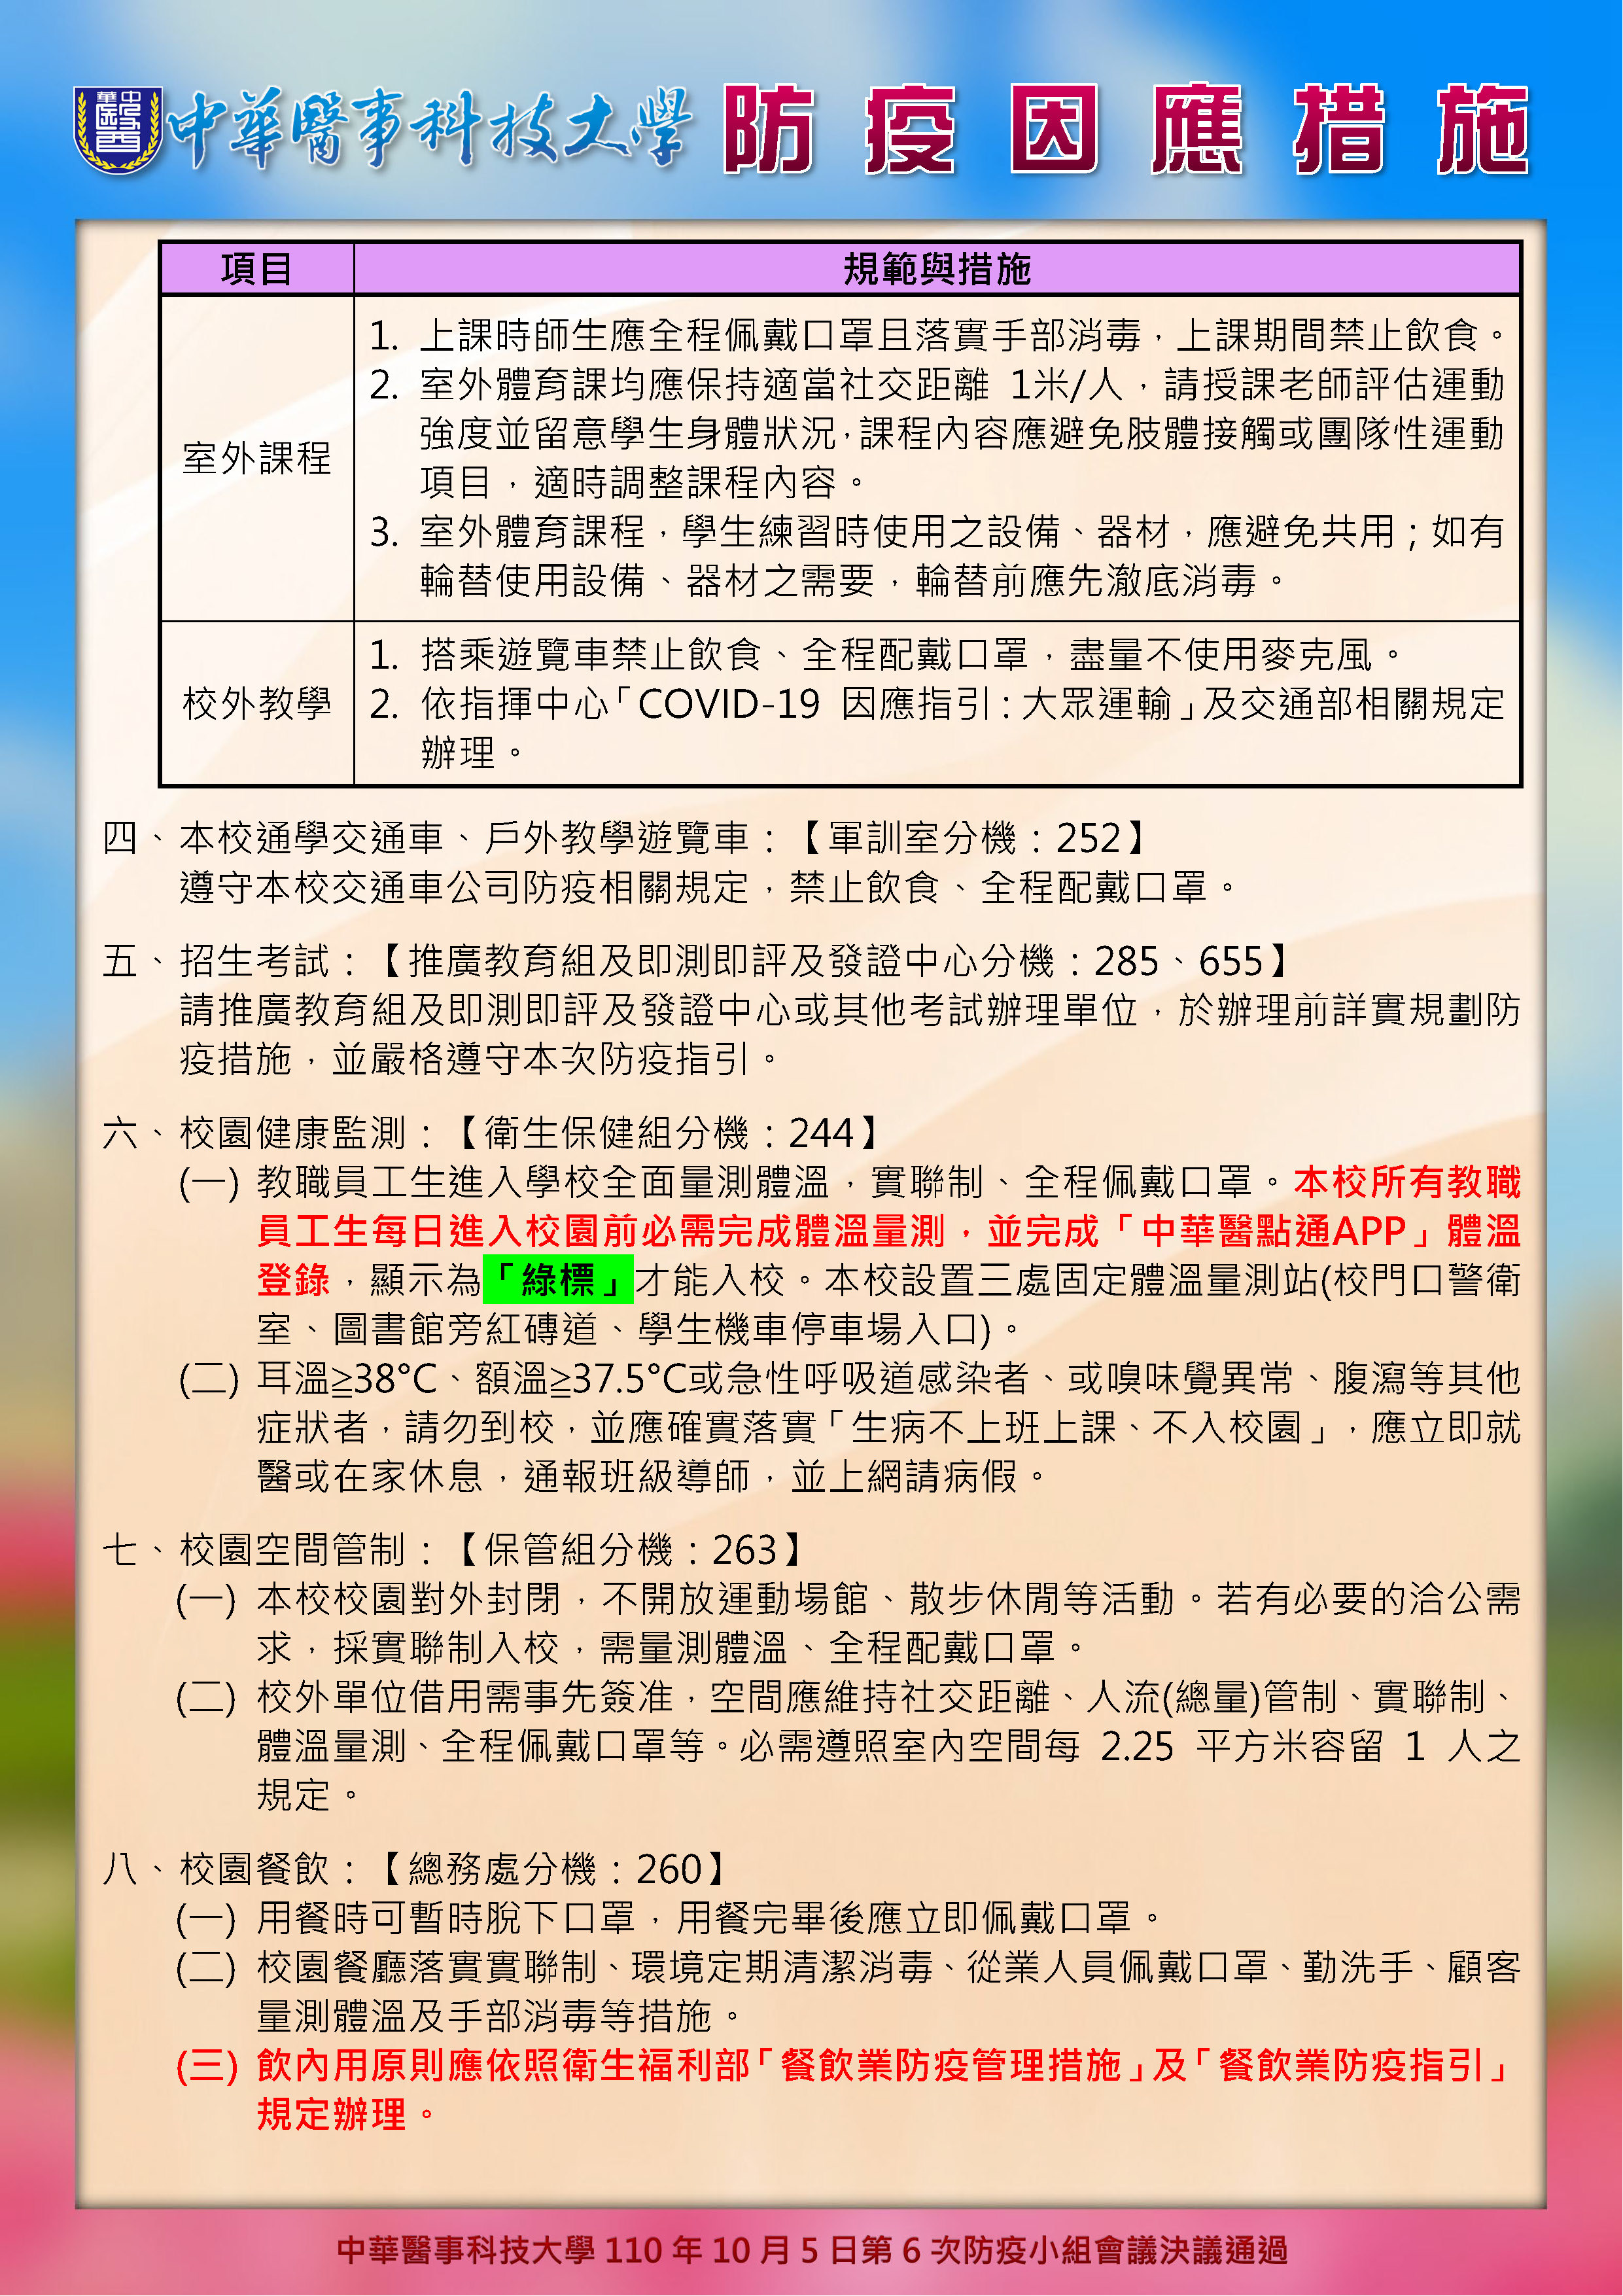 中華醫事科技大學自110年10月6日起防疫因應措施公告 P2